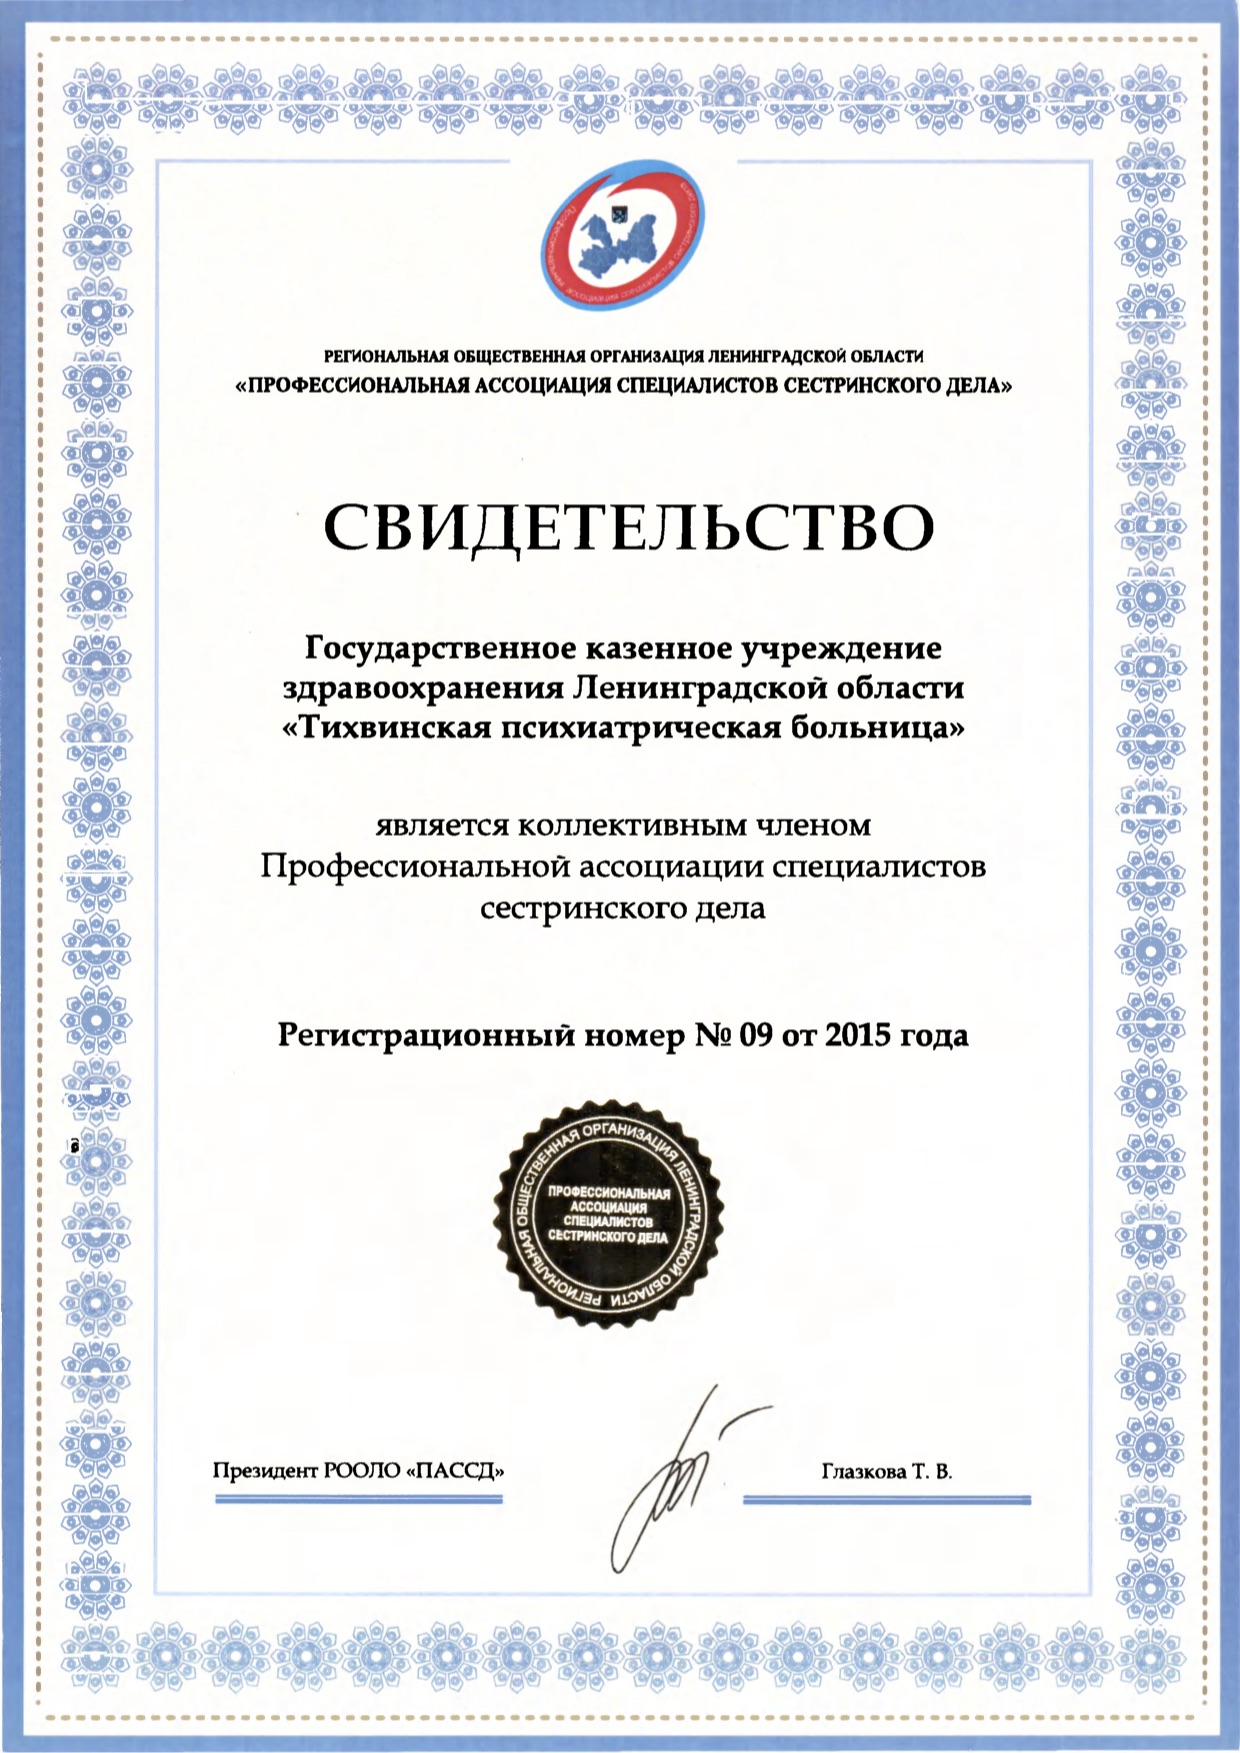 ГКУЗ ЛО "Тихвинская психиатрическая больница": сертификат